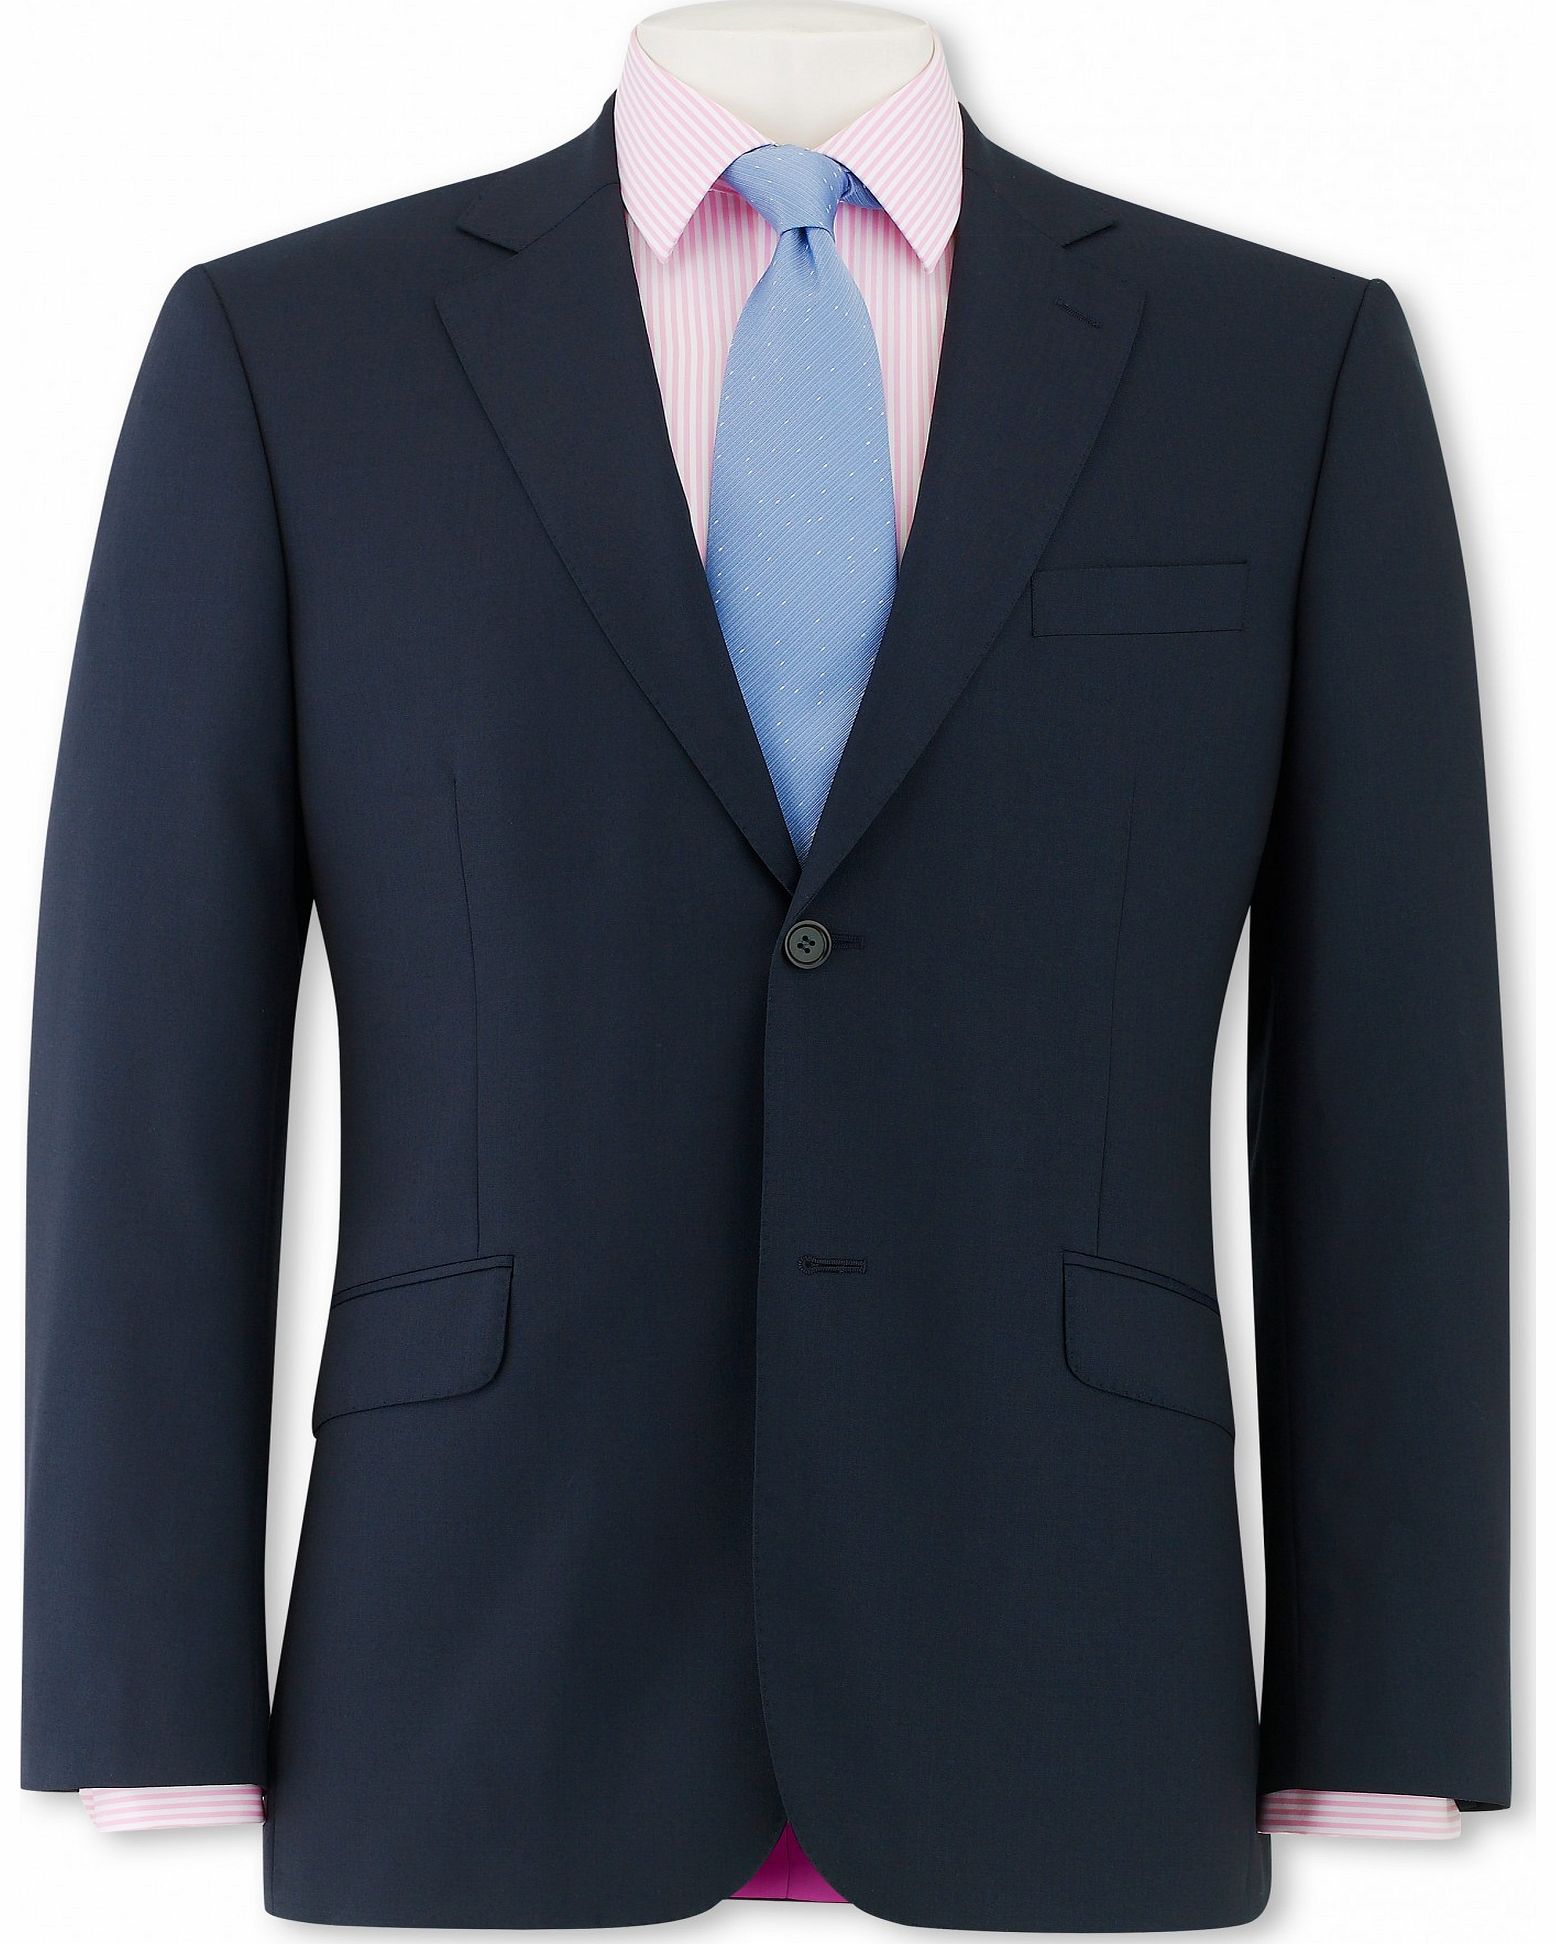 Navy Herringbone Suit Jacket 52`` Long